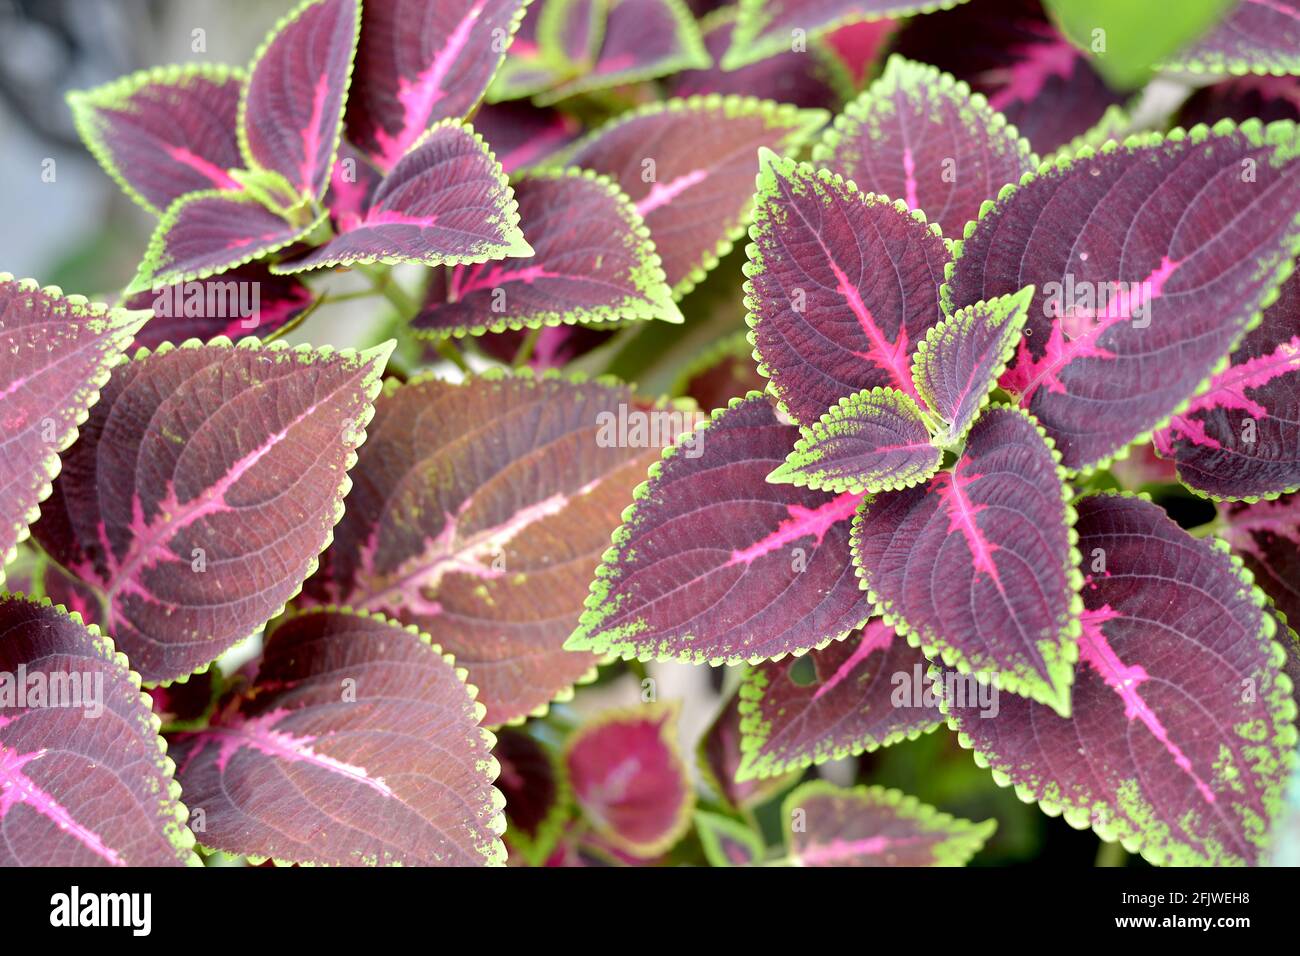 Miana leaf, iler,Coleus atropurpureus, Coleus atropurpureus or Plectranthus scutellarioides. House plant, outdoor plant Stock Photo